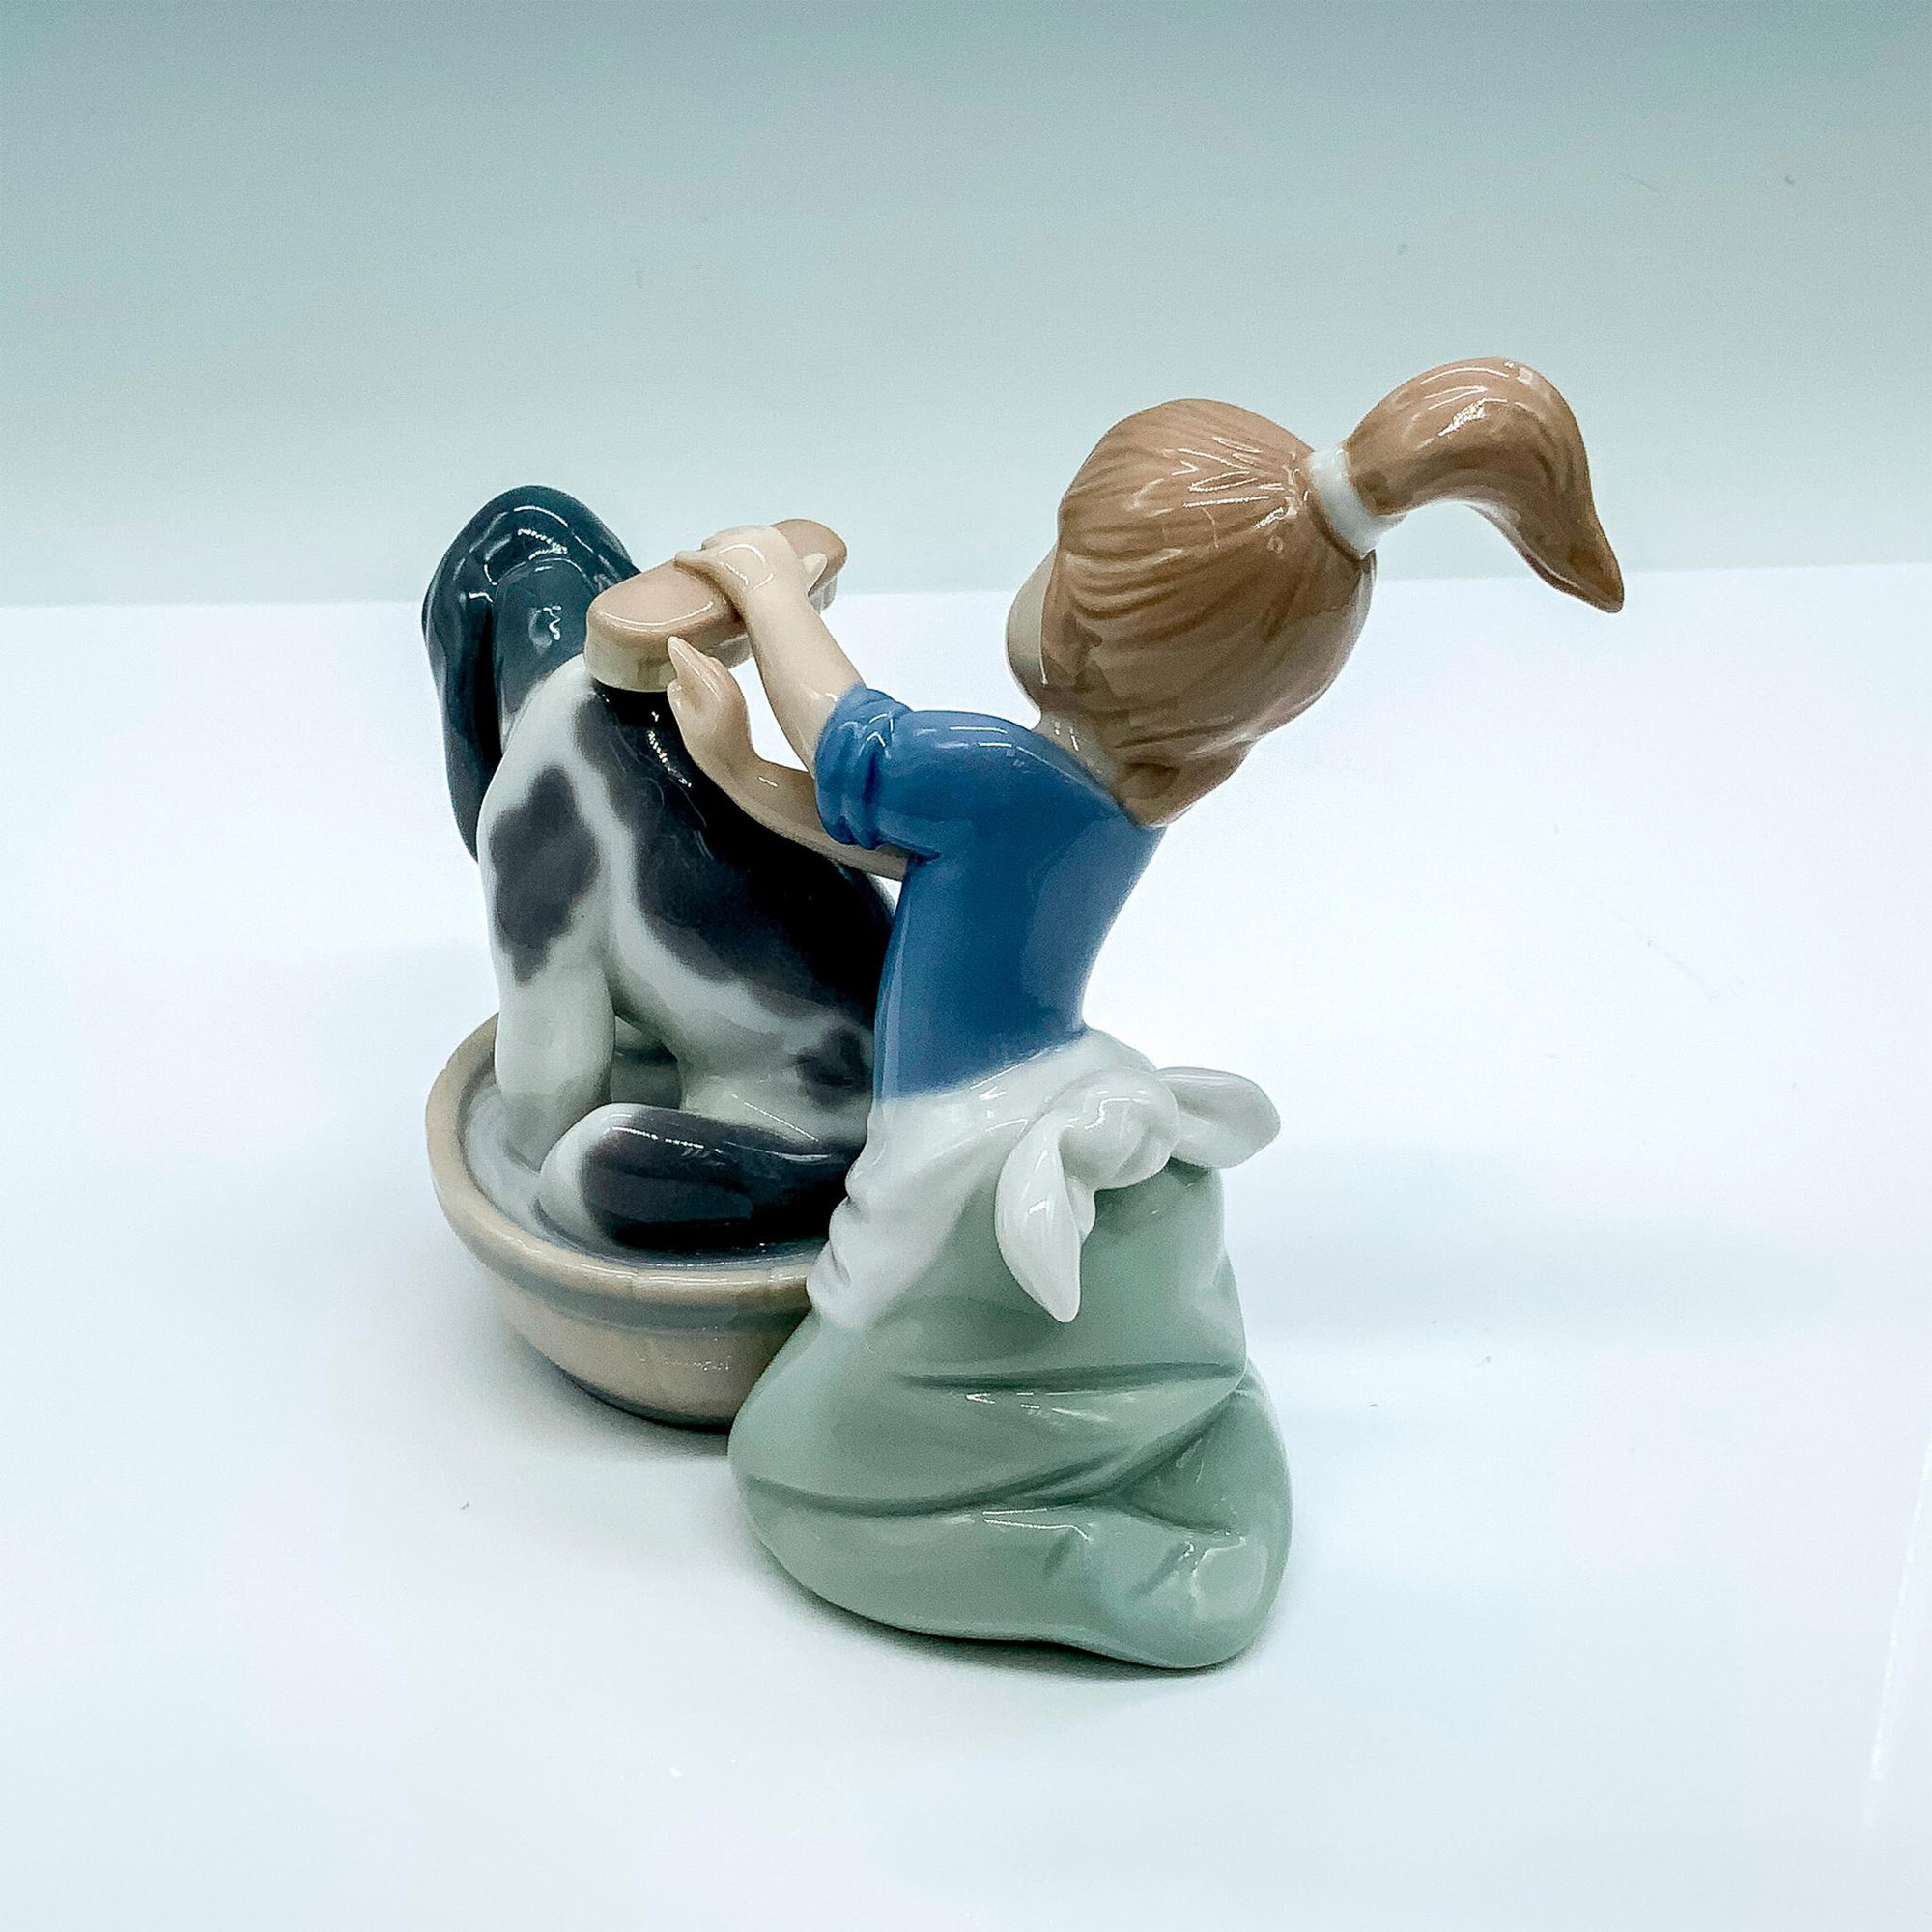 Bashful Bather 1005455 - Lladro Porcelain Figurine - Image 3 of 4